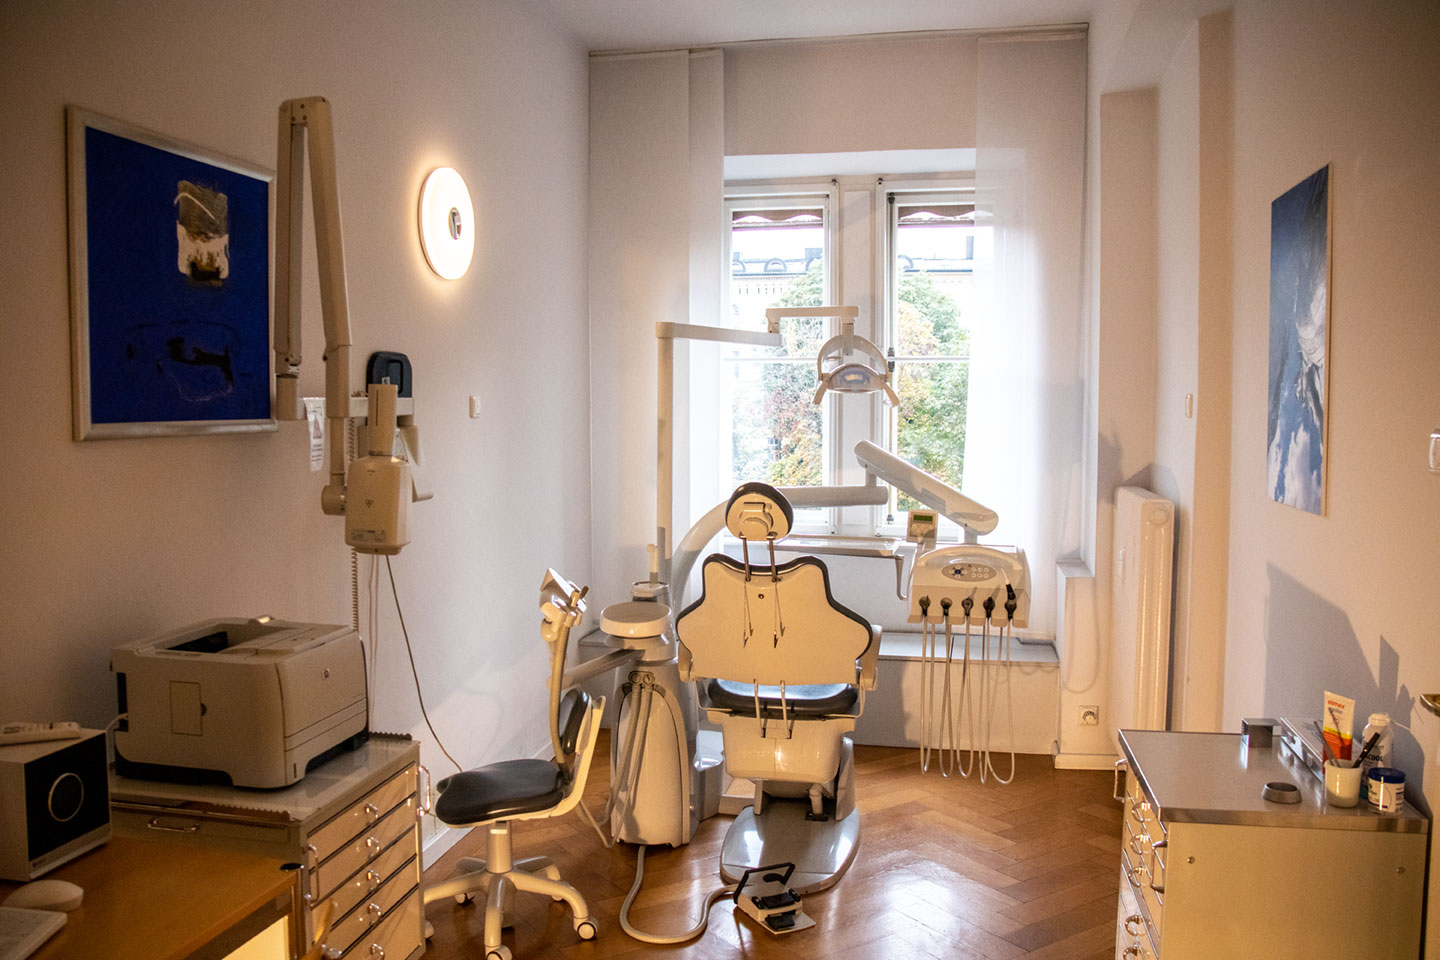 Praxis 3 Röntgen Dr. med. dent. Prestele M. Sc. in München